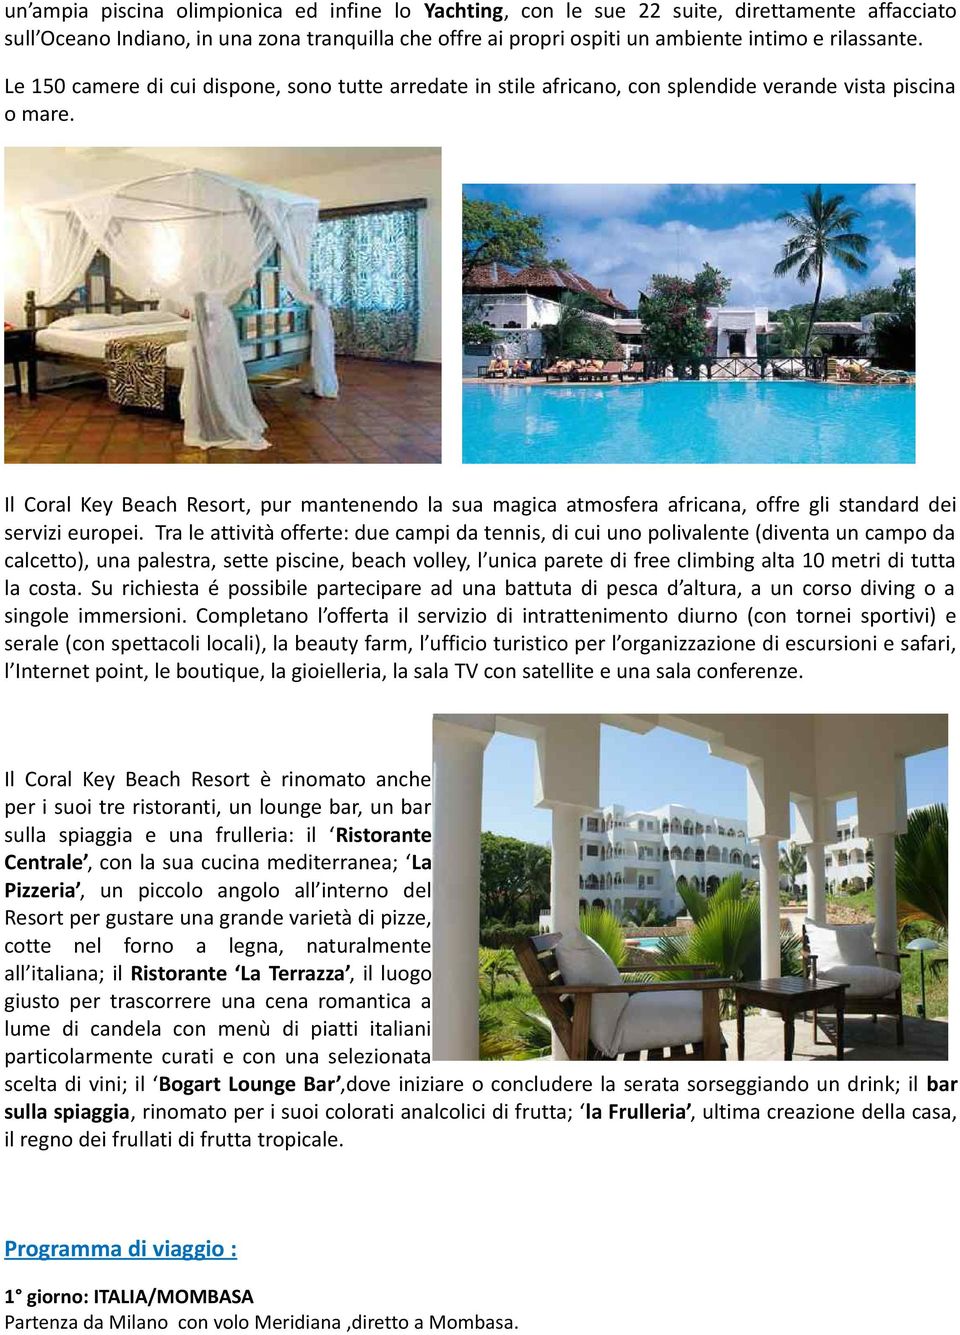 Il Coral Key Beach Resort, pur mantenendo la sua magica atmosfera africana, offre gli standard dei servizi europei.